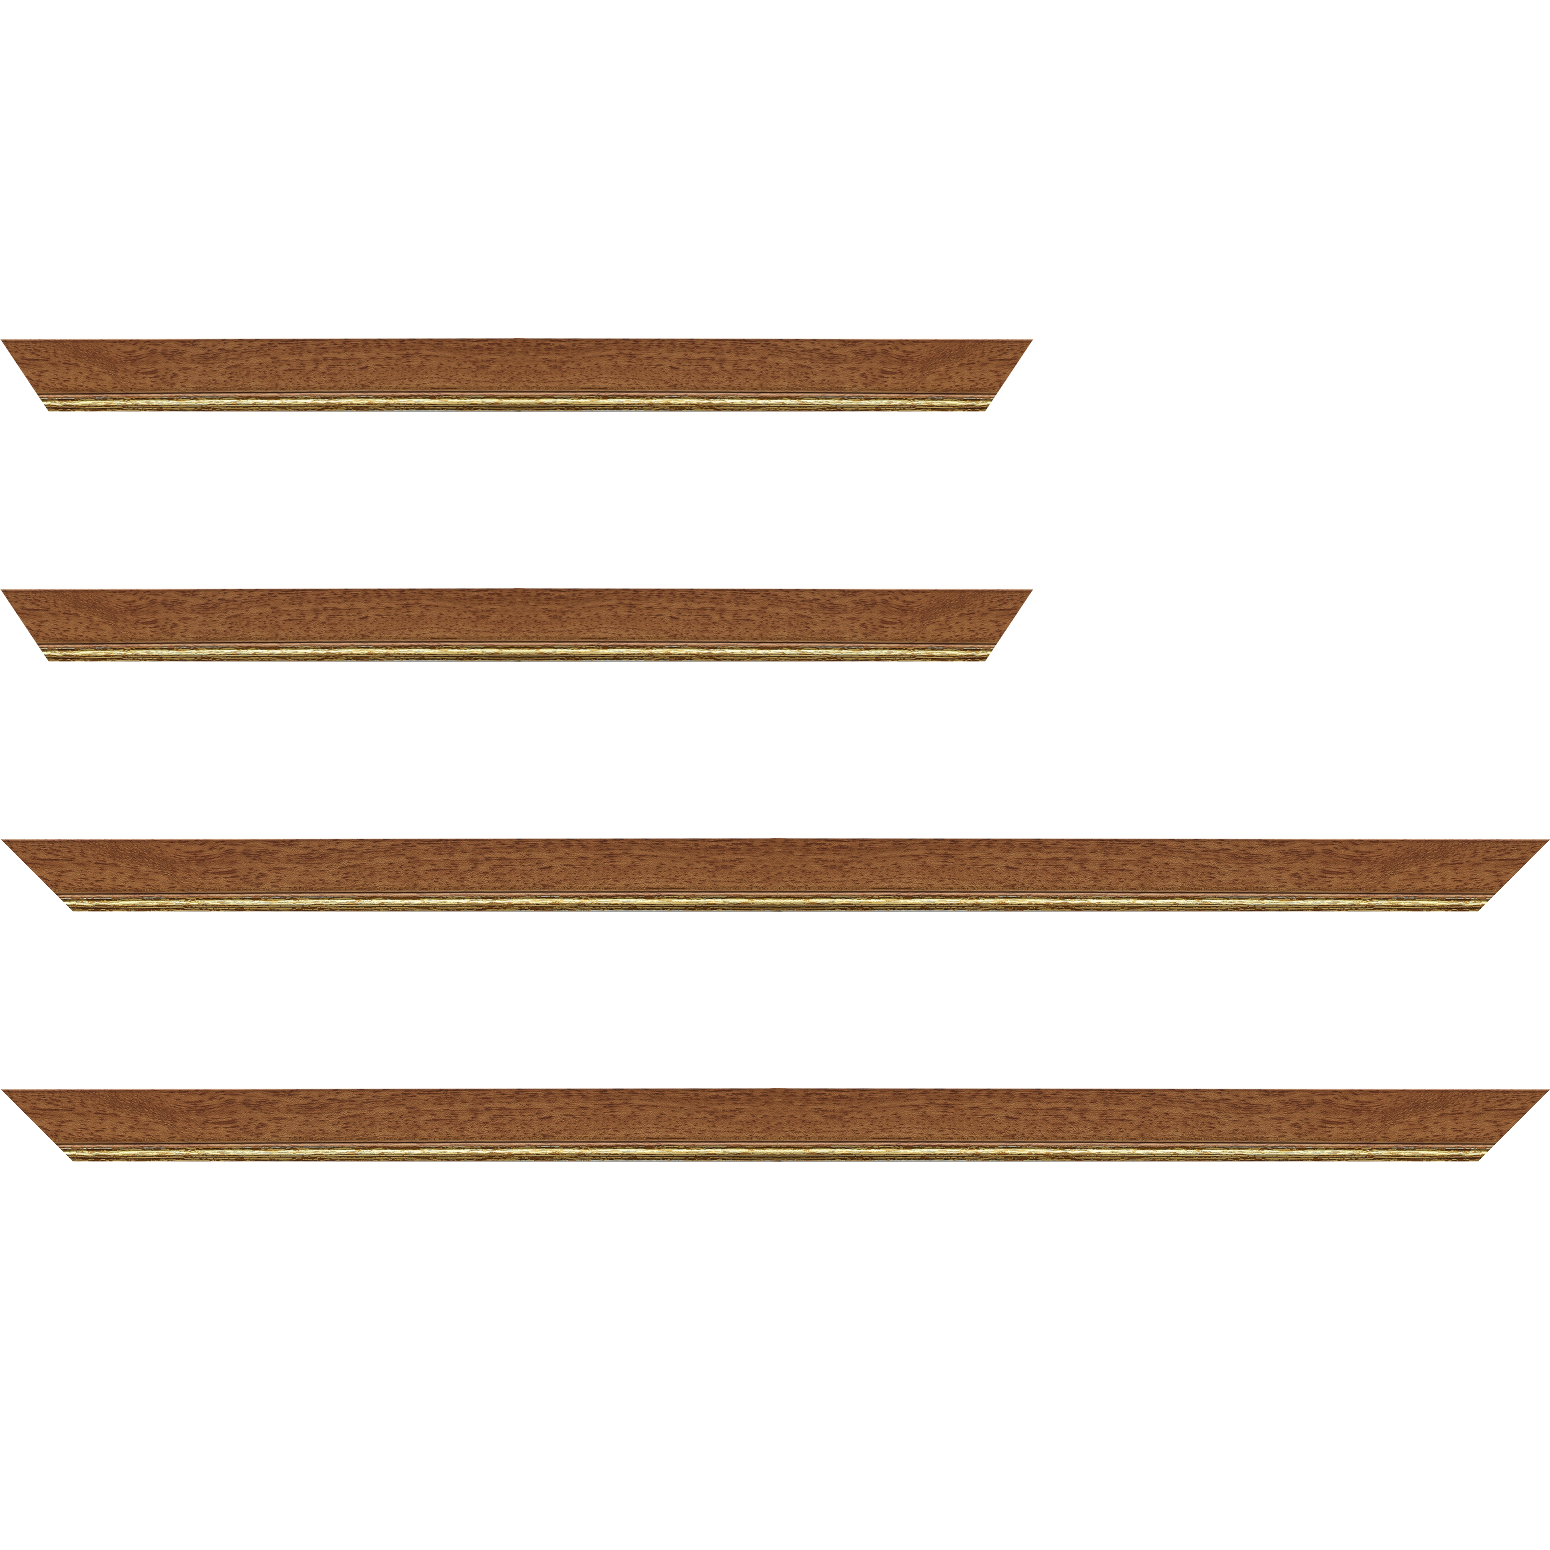 Baguette bois profil plat largeur 2.5cm couleur marron ton bois filet or - 59.4x84.1